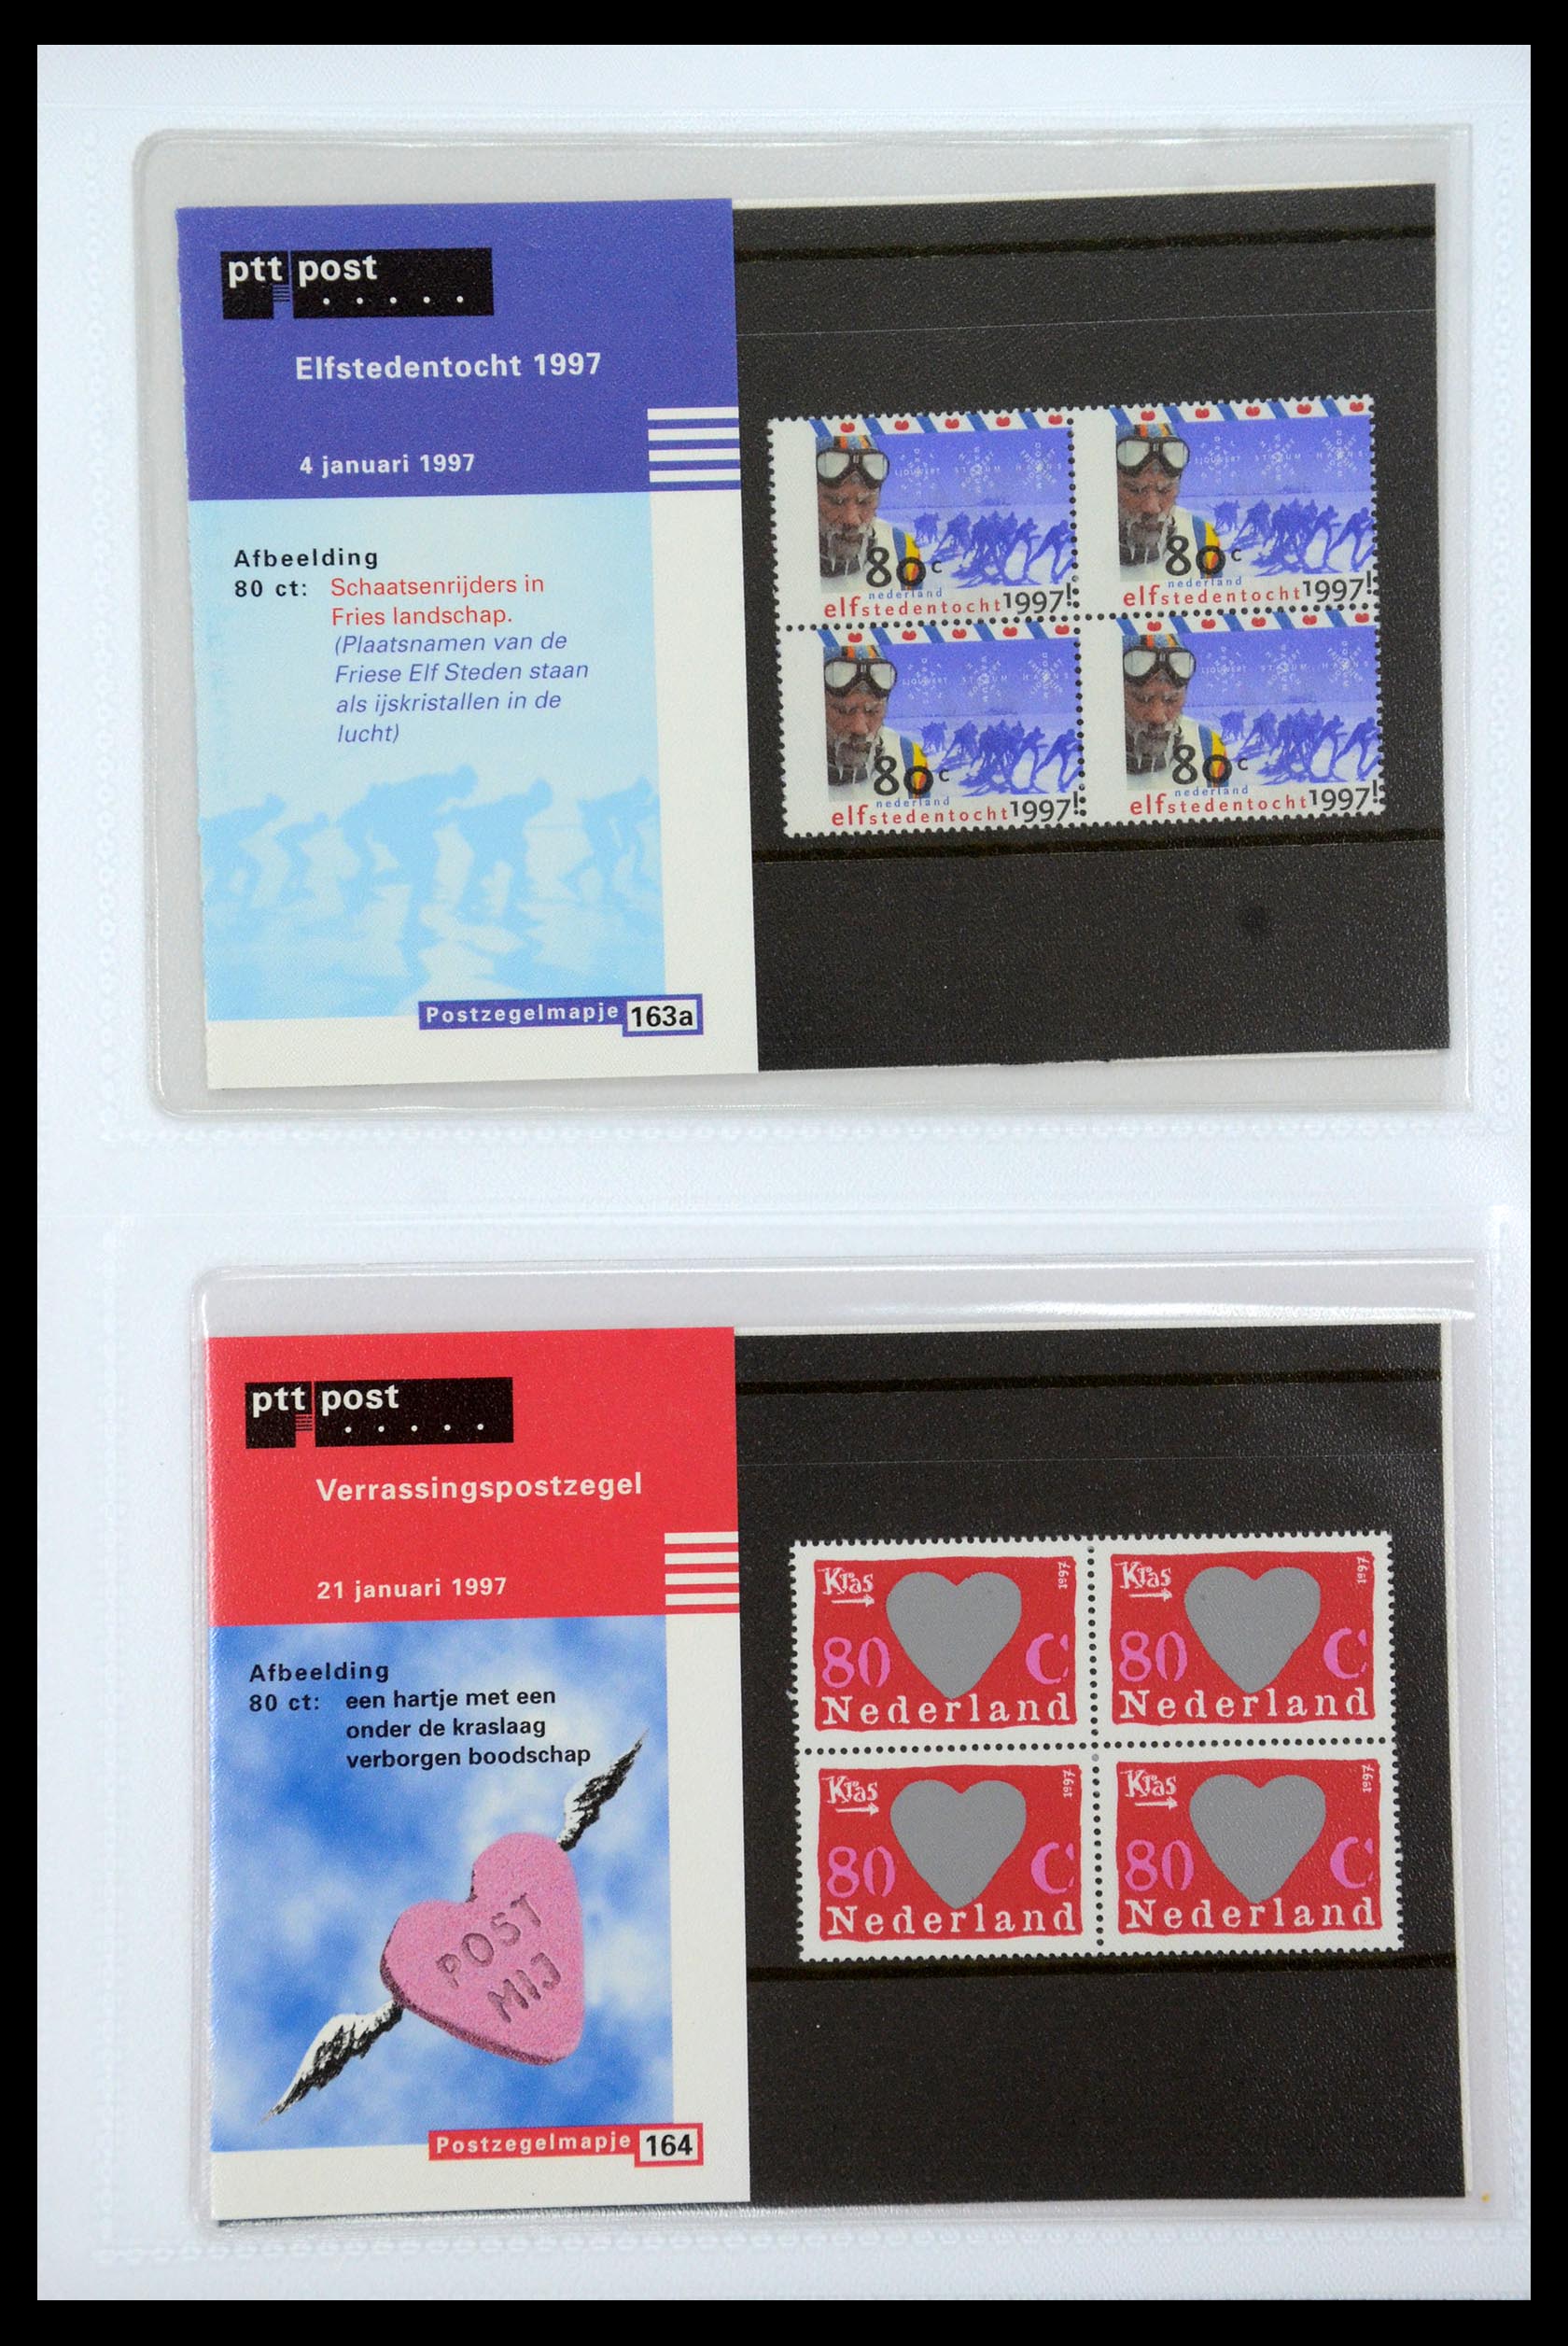 35947 085 - Stamp Collection 35947 Netherlands PTT presentation packs 1982-2019!